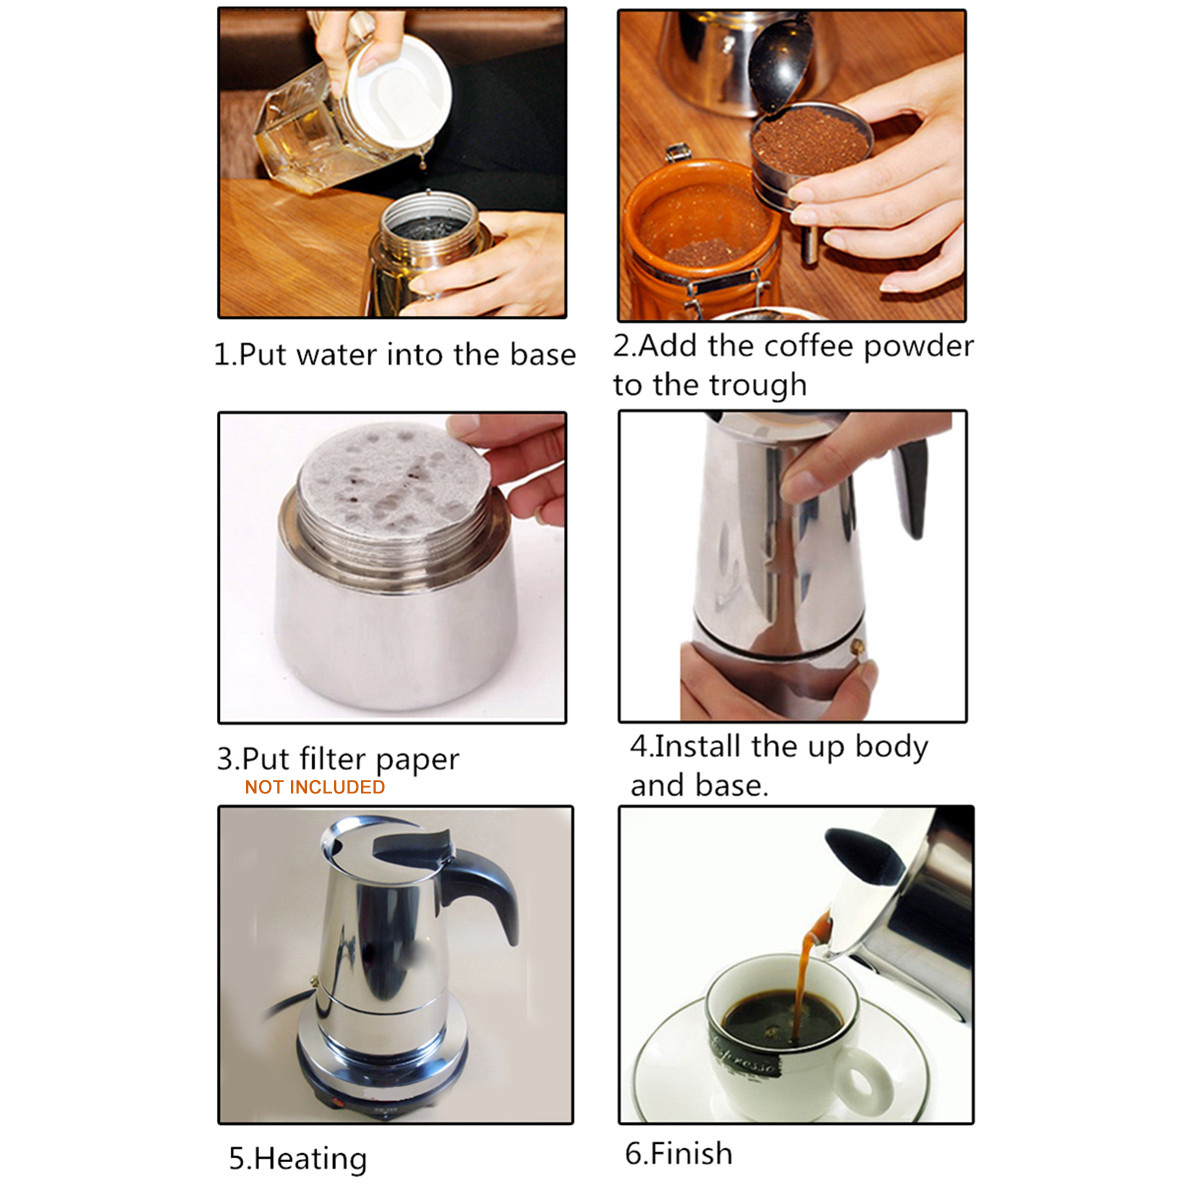 220V 500W 450ml Portable Coffee Espresso Pot Maker & Electric Stove Home Kitchen Tools 110